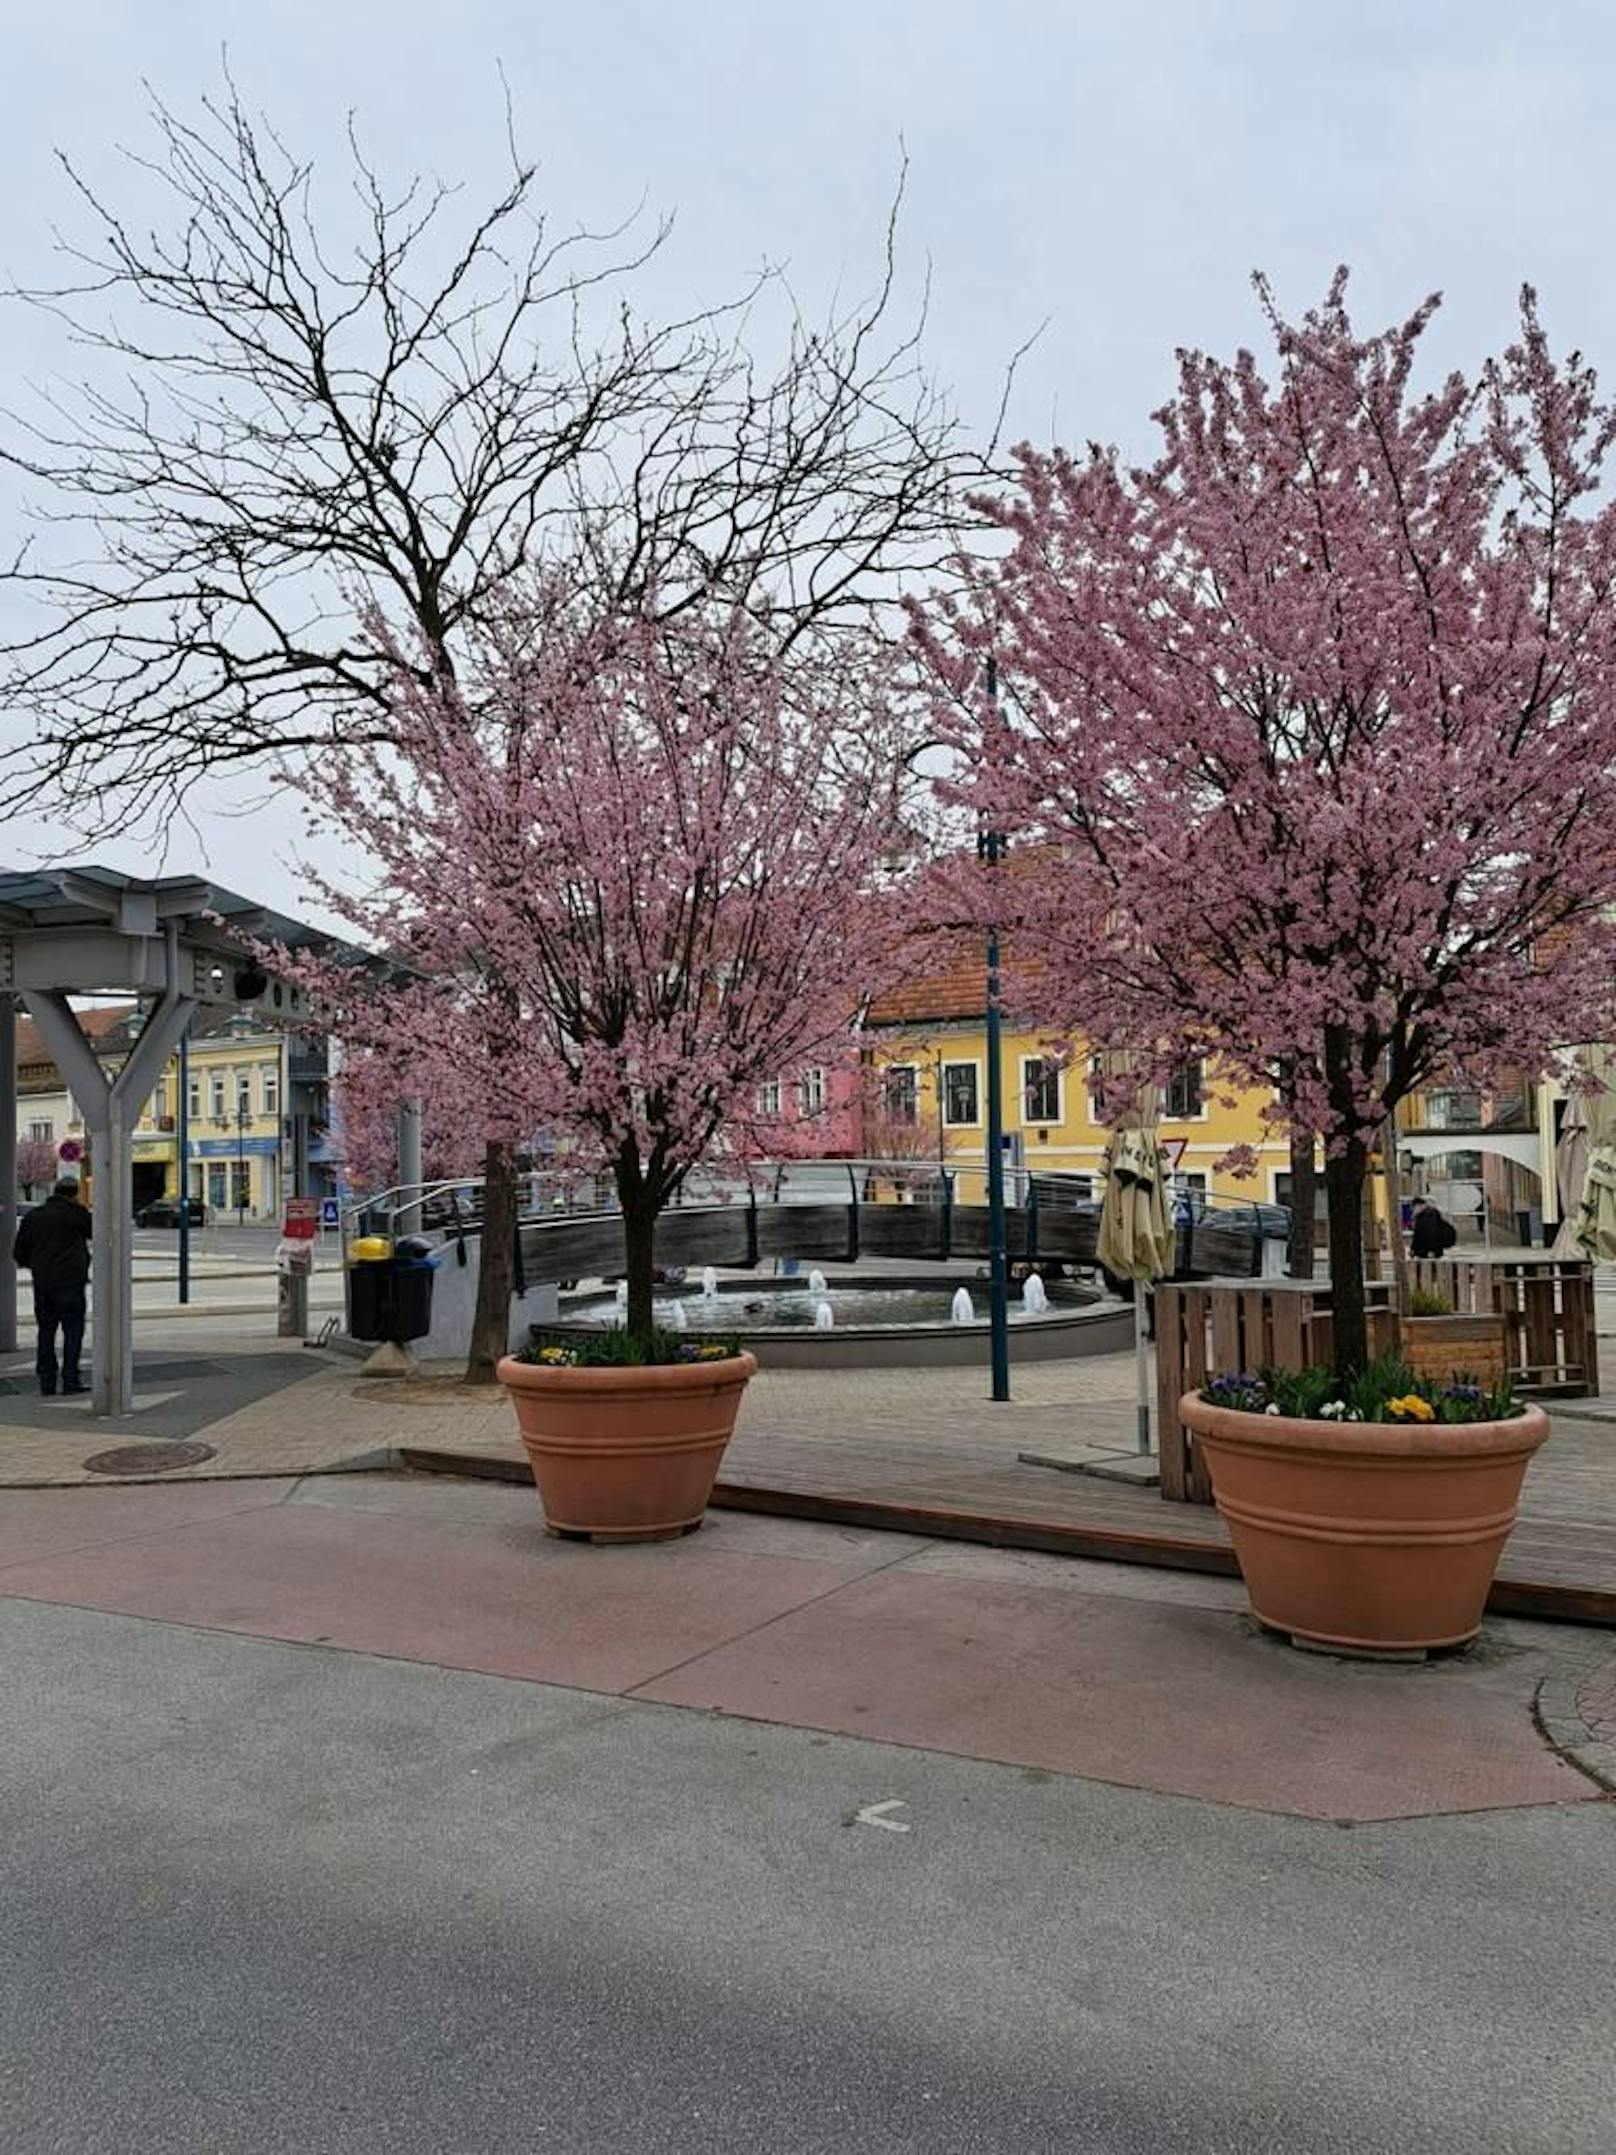 Gemeinde bekam 2.951 € Stromrechnung für Springbrunnen